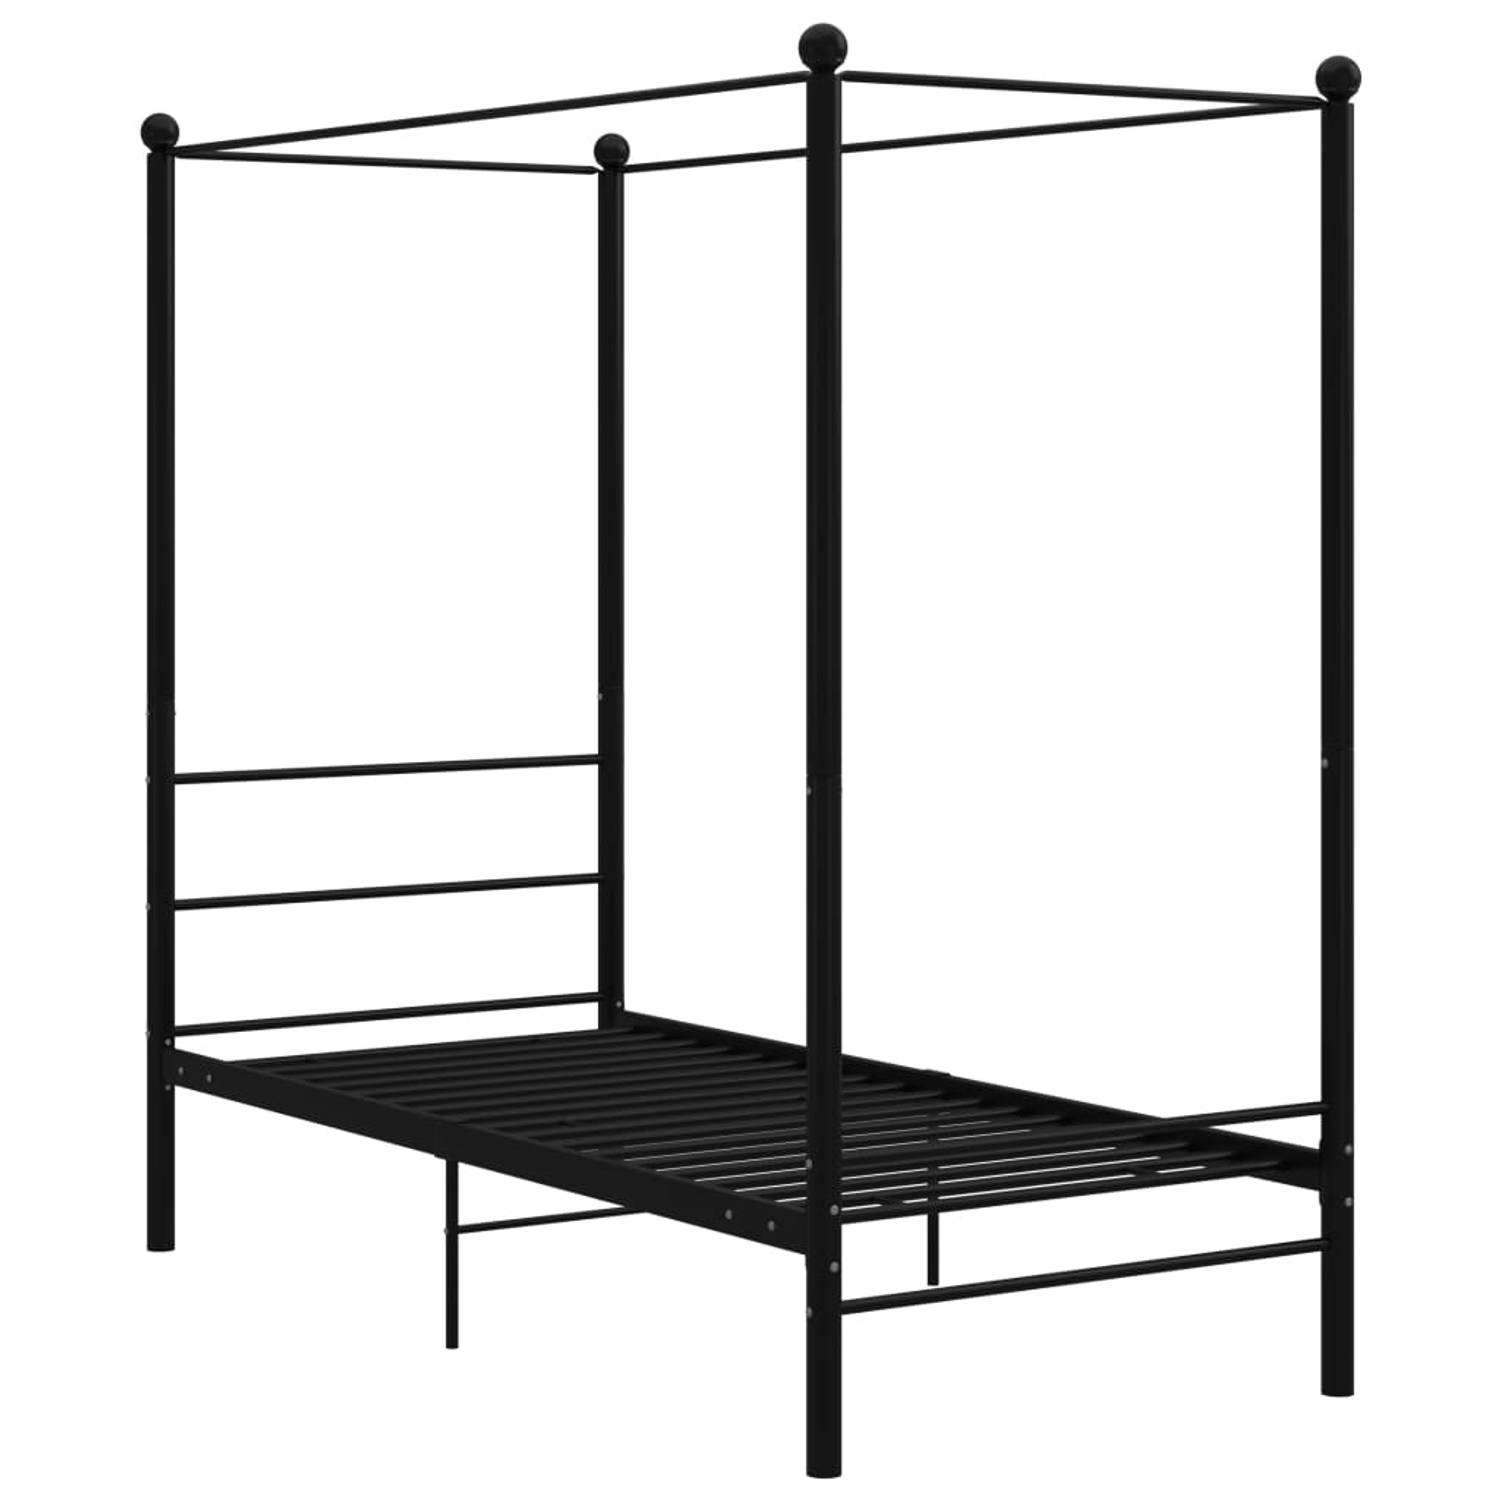 The Living Store Hemelbedframe metaal zwart 100x200 cm - Bedframe - Bedframe - Bed Frame - Bed Frames - Bed - Bedden - Metalen Bedframe - Metalen Bedframes - 1-persoonsbed - 1